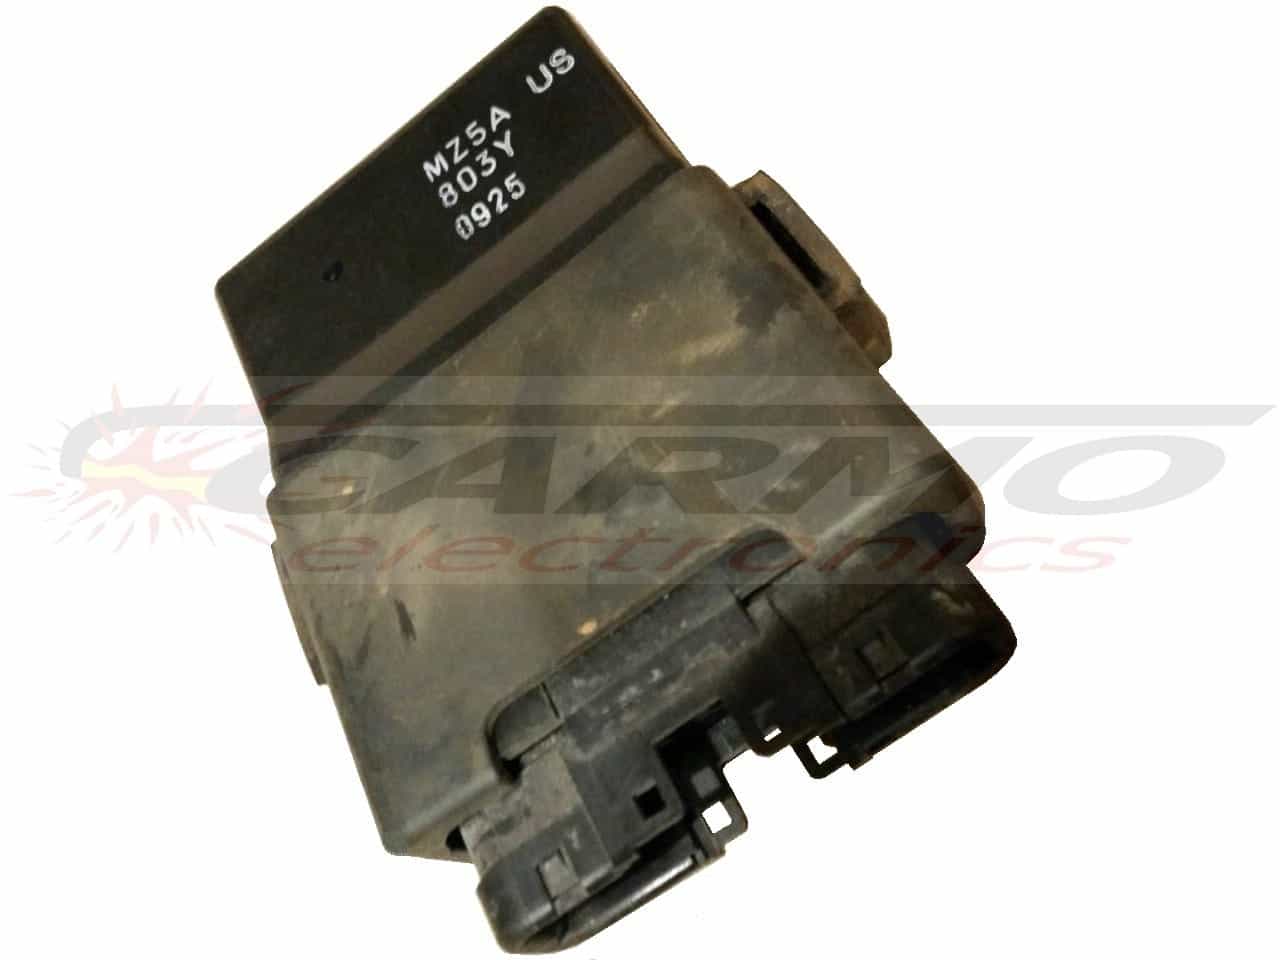 VF750 TCI CDI dispositif de commande boîte noire (MZ5A US, 803Y)